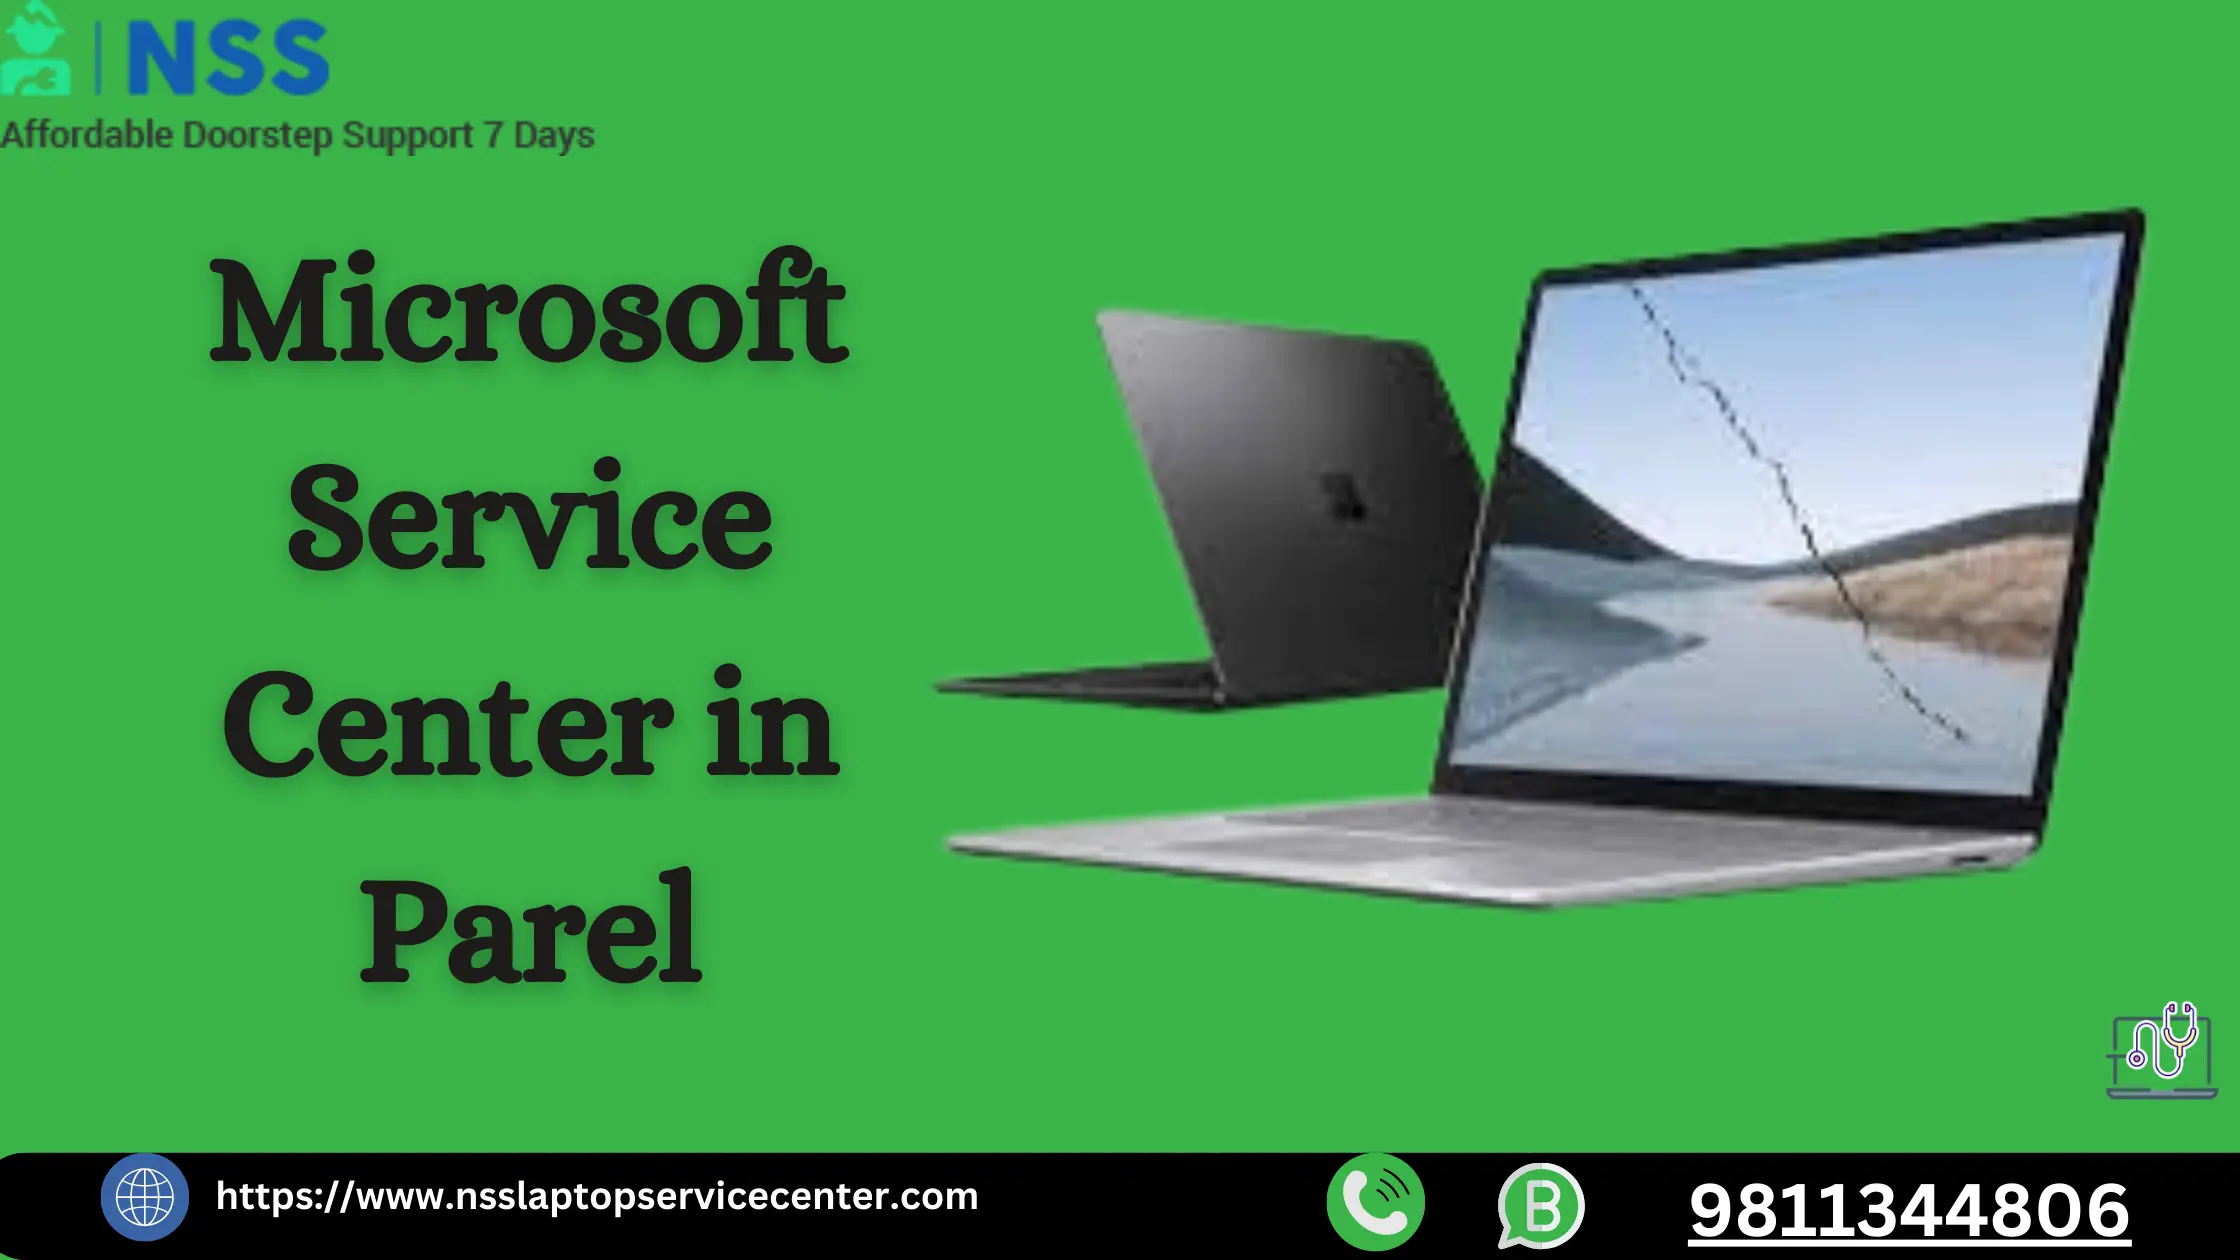 Microsoft Service Center in Parel Near Mumbai